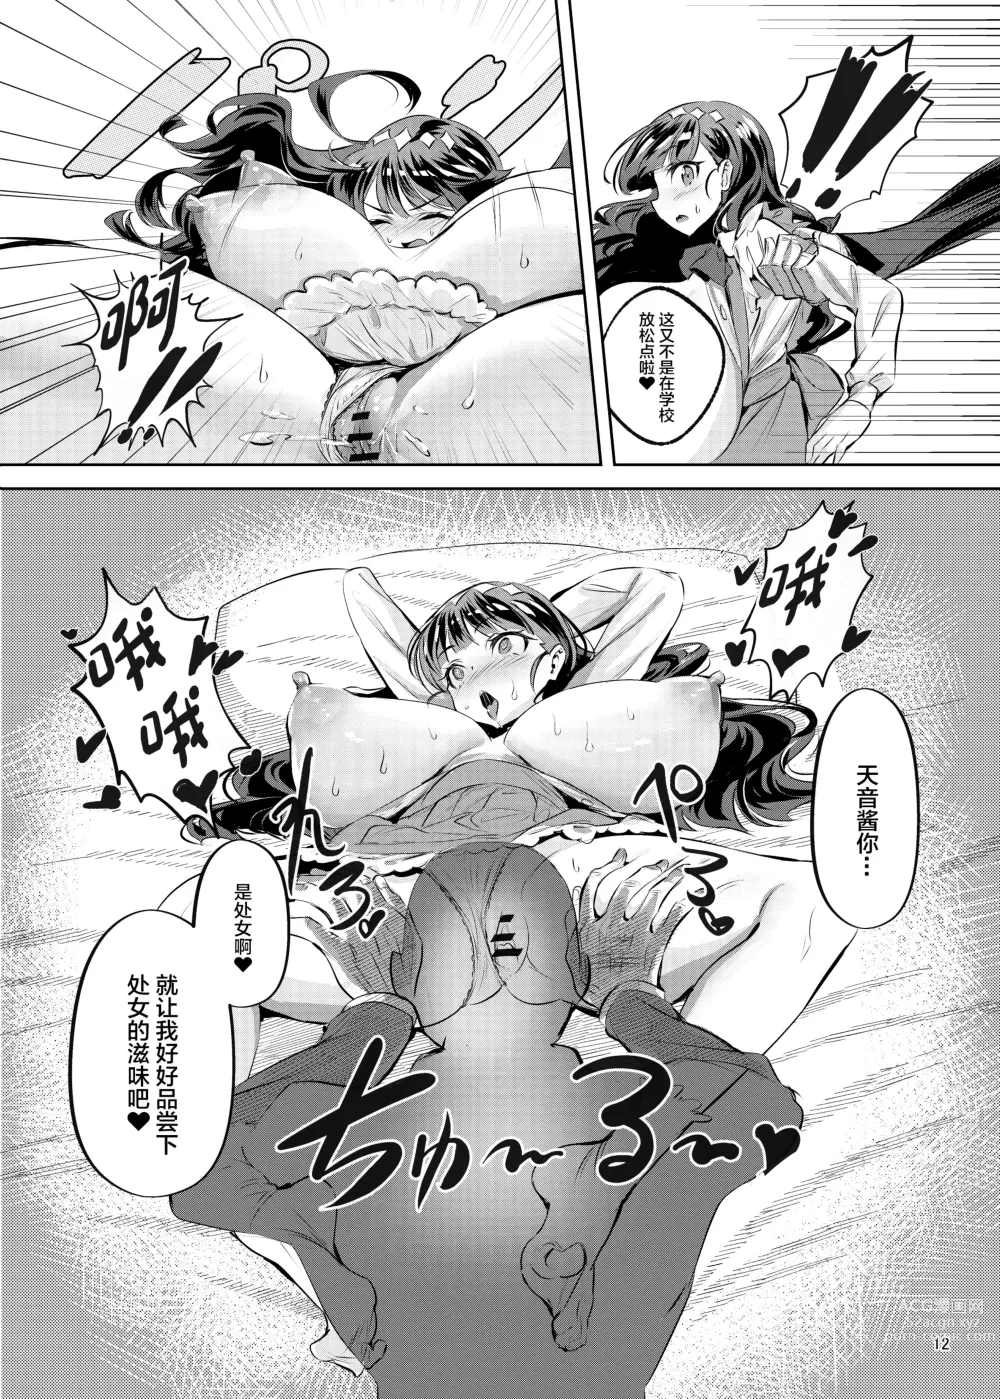 Page 13 of doujinshi Fuku*n ga Jimoto no Kou Hyouka Fuzokuten ni natta Ken